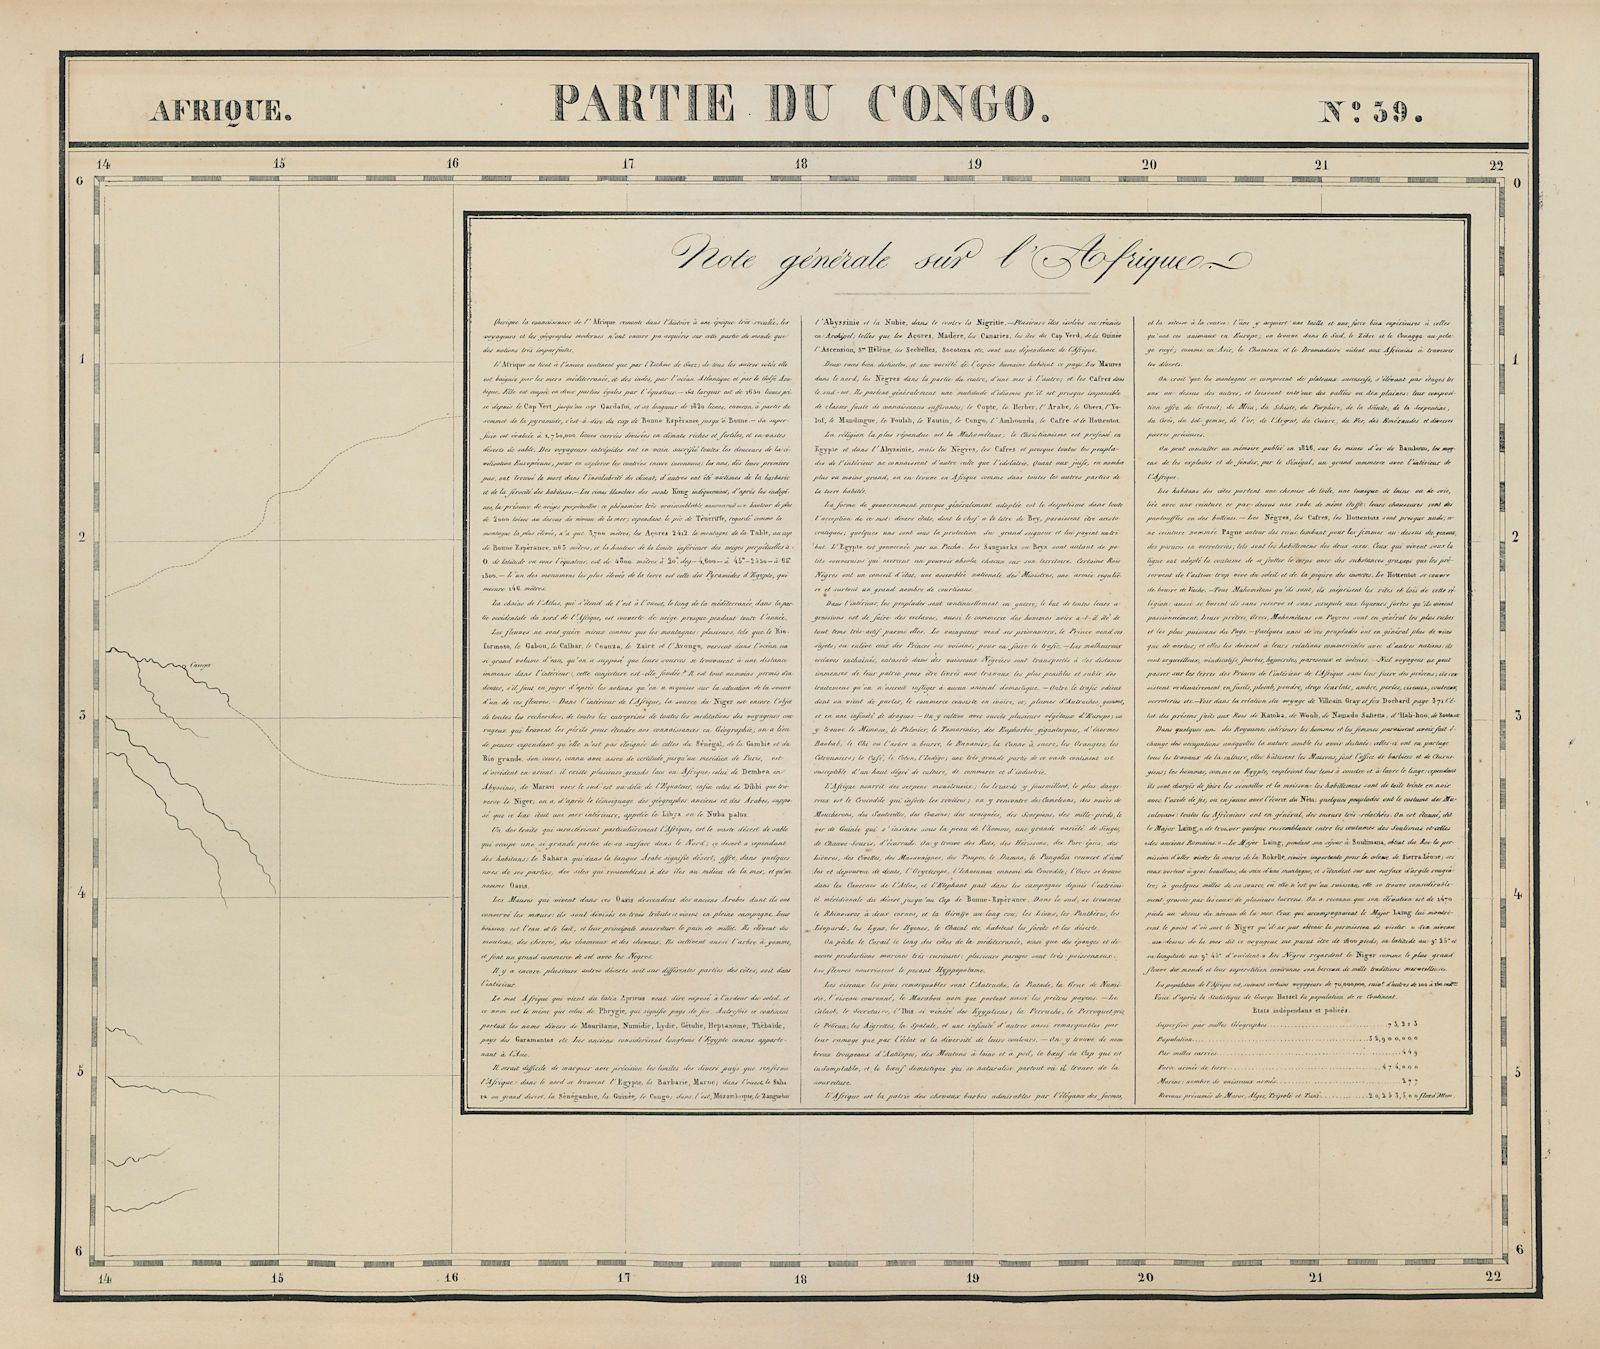 Afrique. Partie du Congo. Note générale sur l'Afrique #39. VANDERMAELEN 1827 map